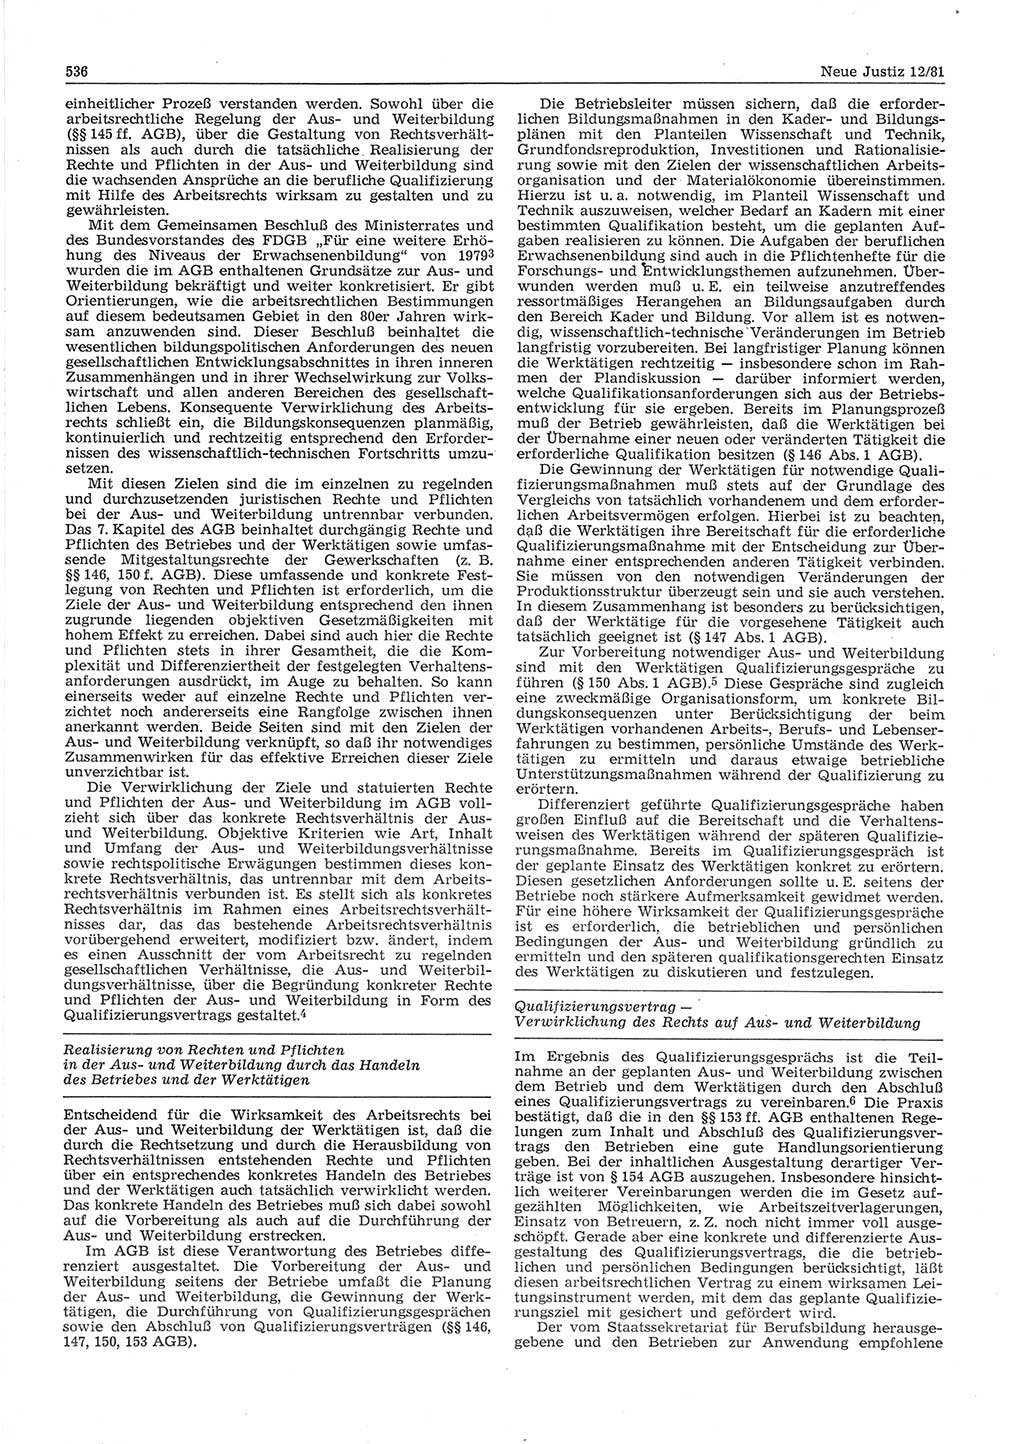 Neue Justiz (NJ), Zeitschrift für sozialistisches Recht und Gesetzlichkeit [Deutsche Demokratische Republik (DDR)], 35. Jahrgang 1981, Seite 536 (NJ DDR 1981, S. 536)